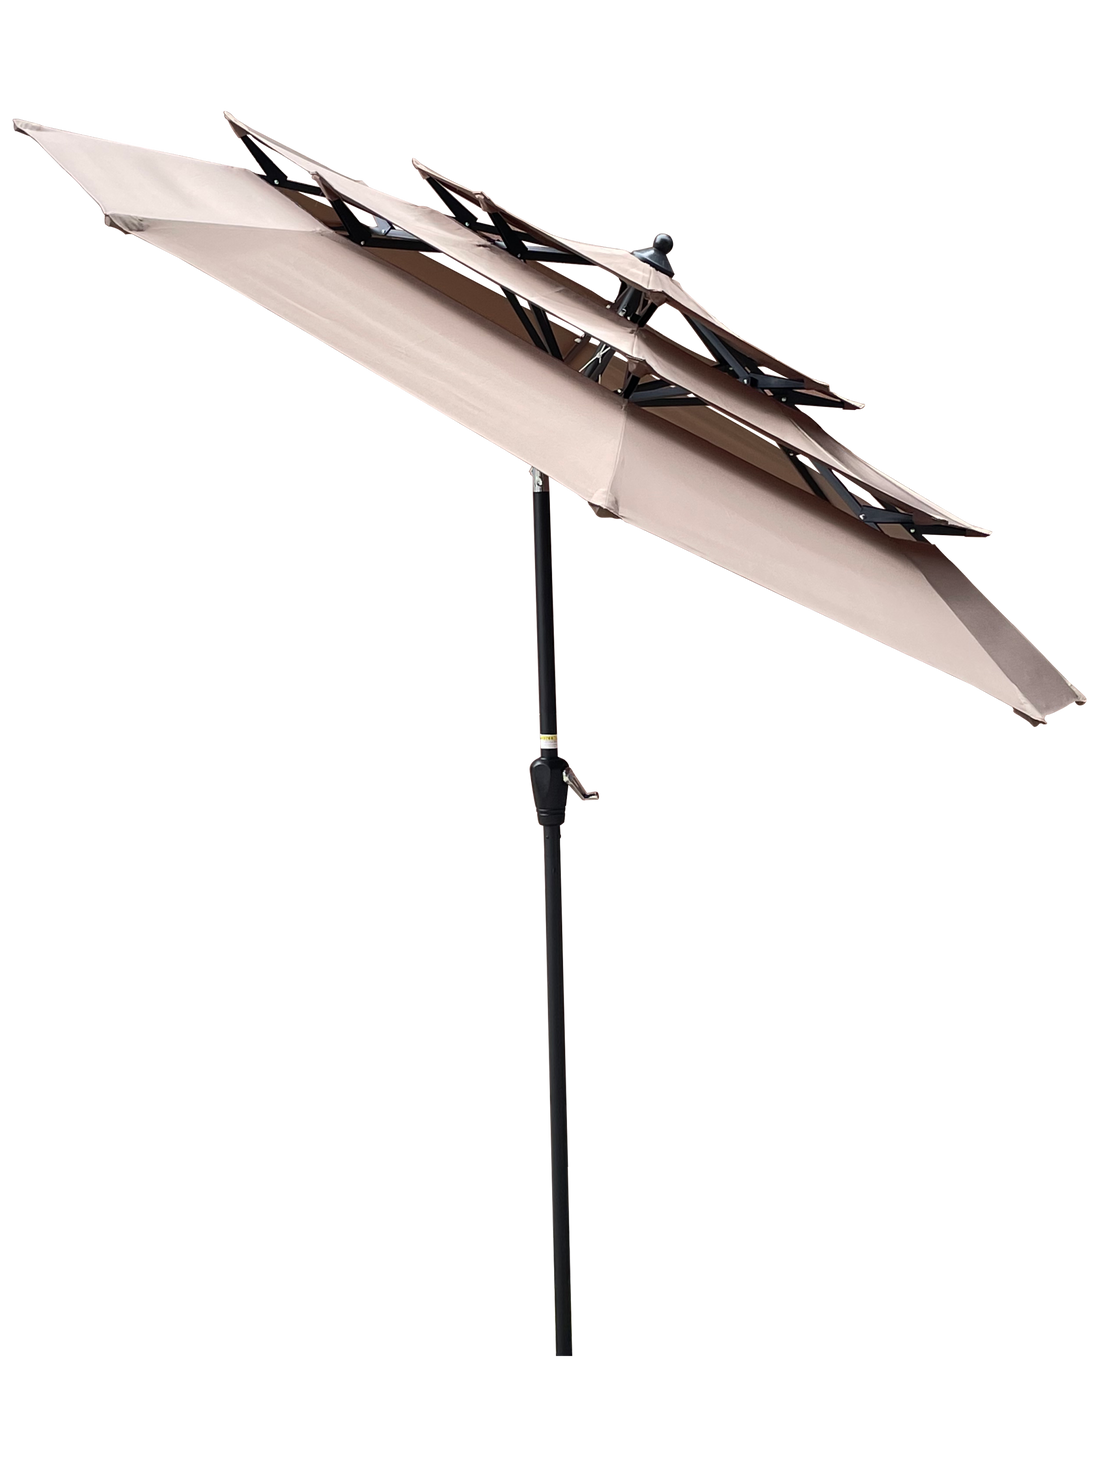 9Ft 3 Tiers Outdoor Patio Umbrella with Crank and tilt tan-metal